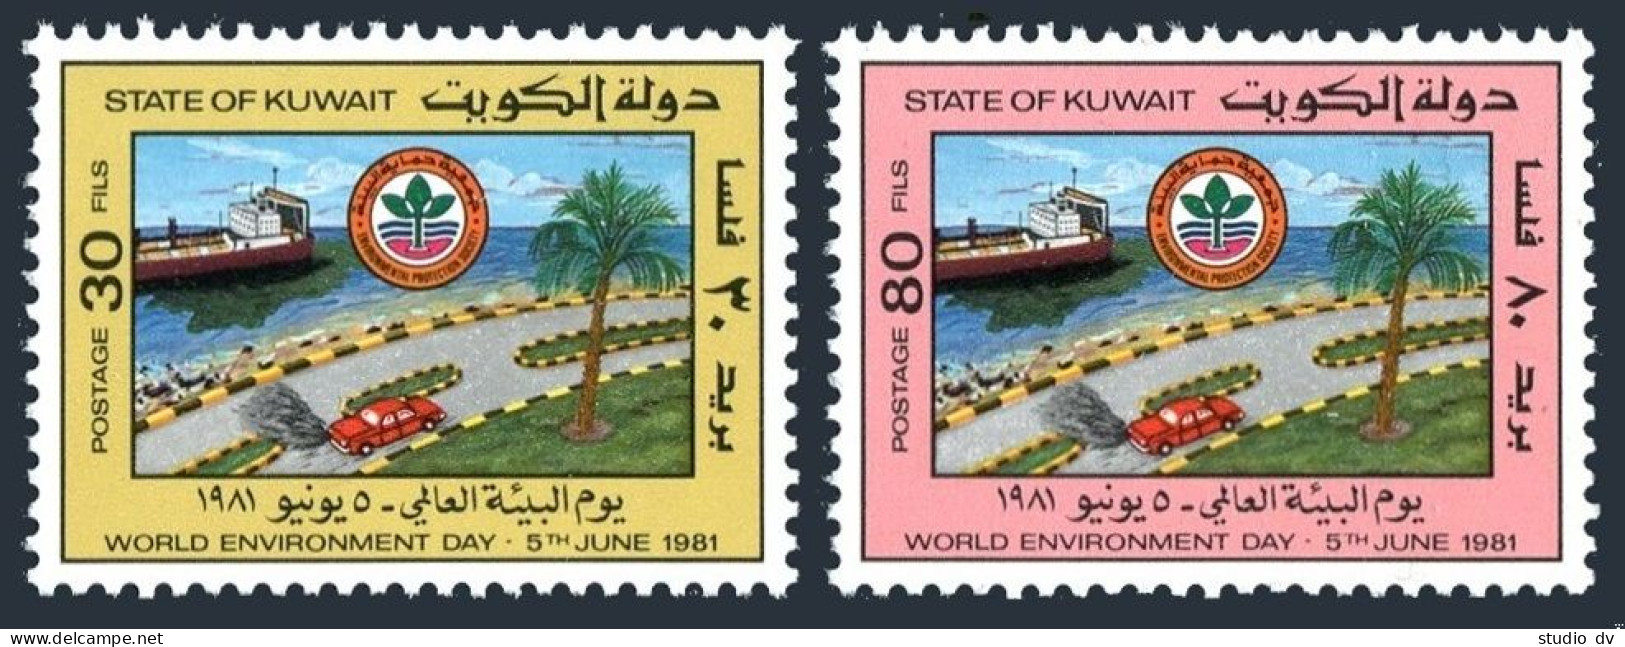 Kuwait 851-852, MNH. Mi 893-894. World Environment Day, 1981. Automobile, Ship. - Kuwait